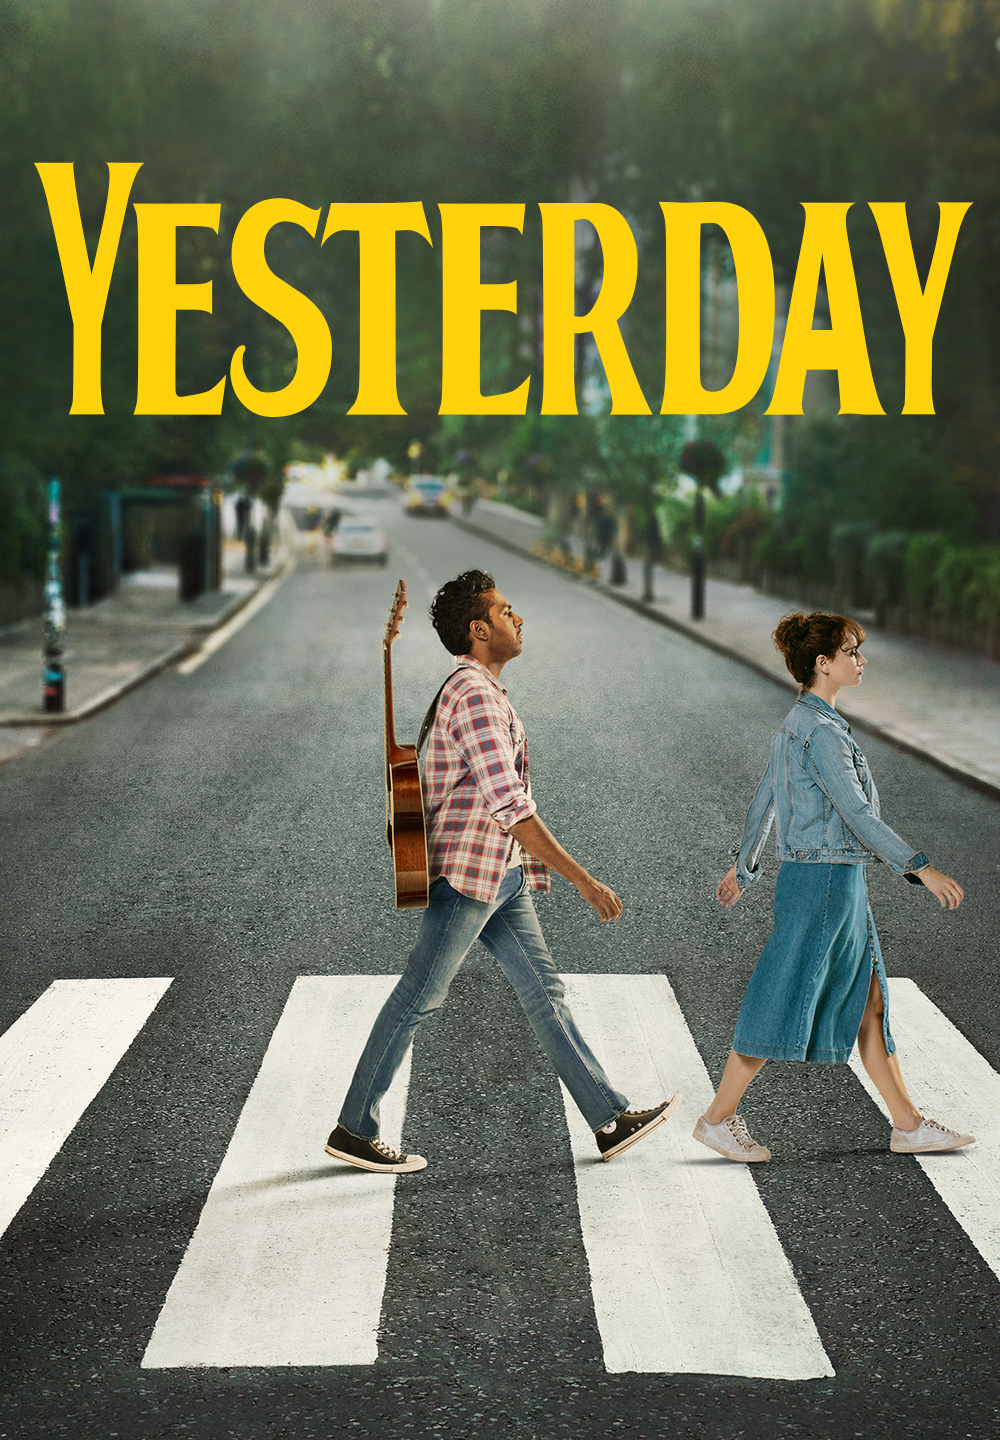 Yesterday [HD] (2019)